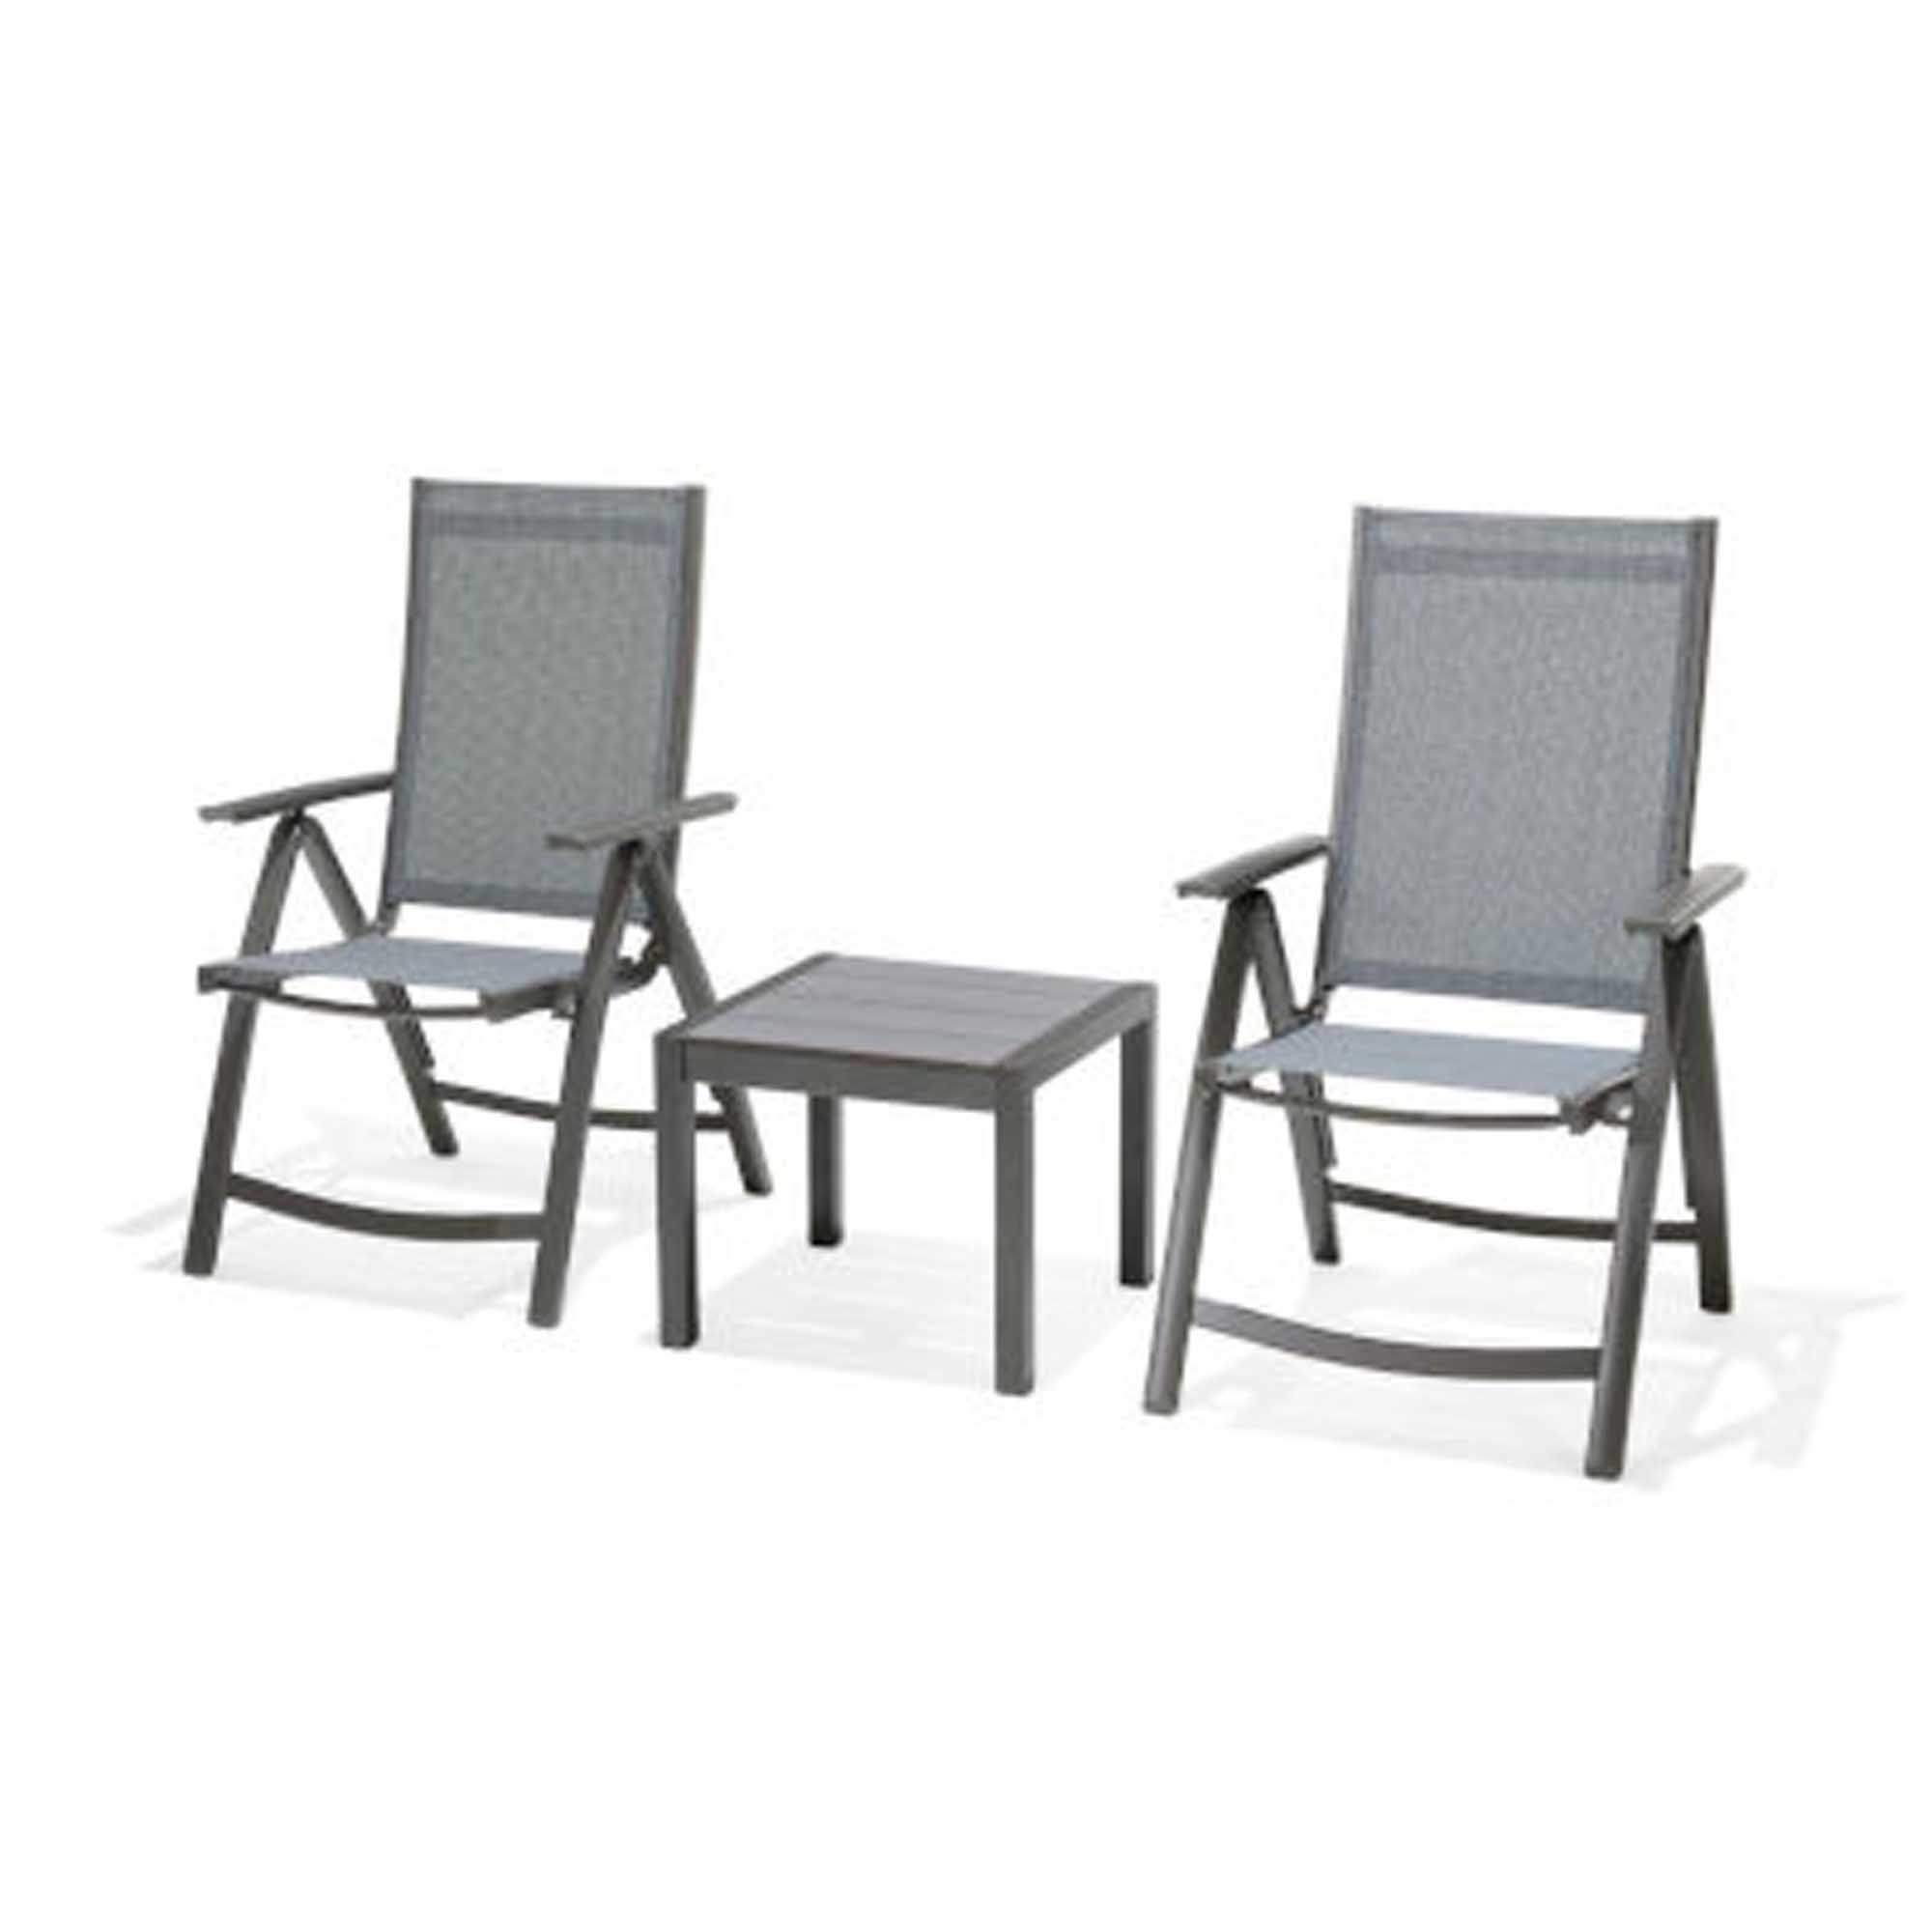 Lifestyle Garden Solana kafésett Grå/grå 2 posisjonsstoler & bord 50x50 cm